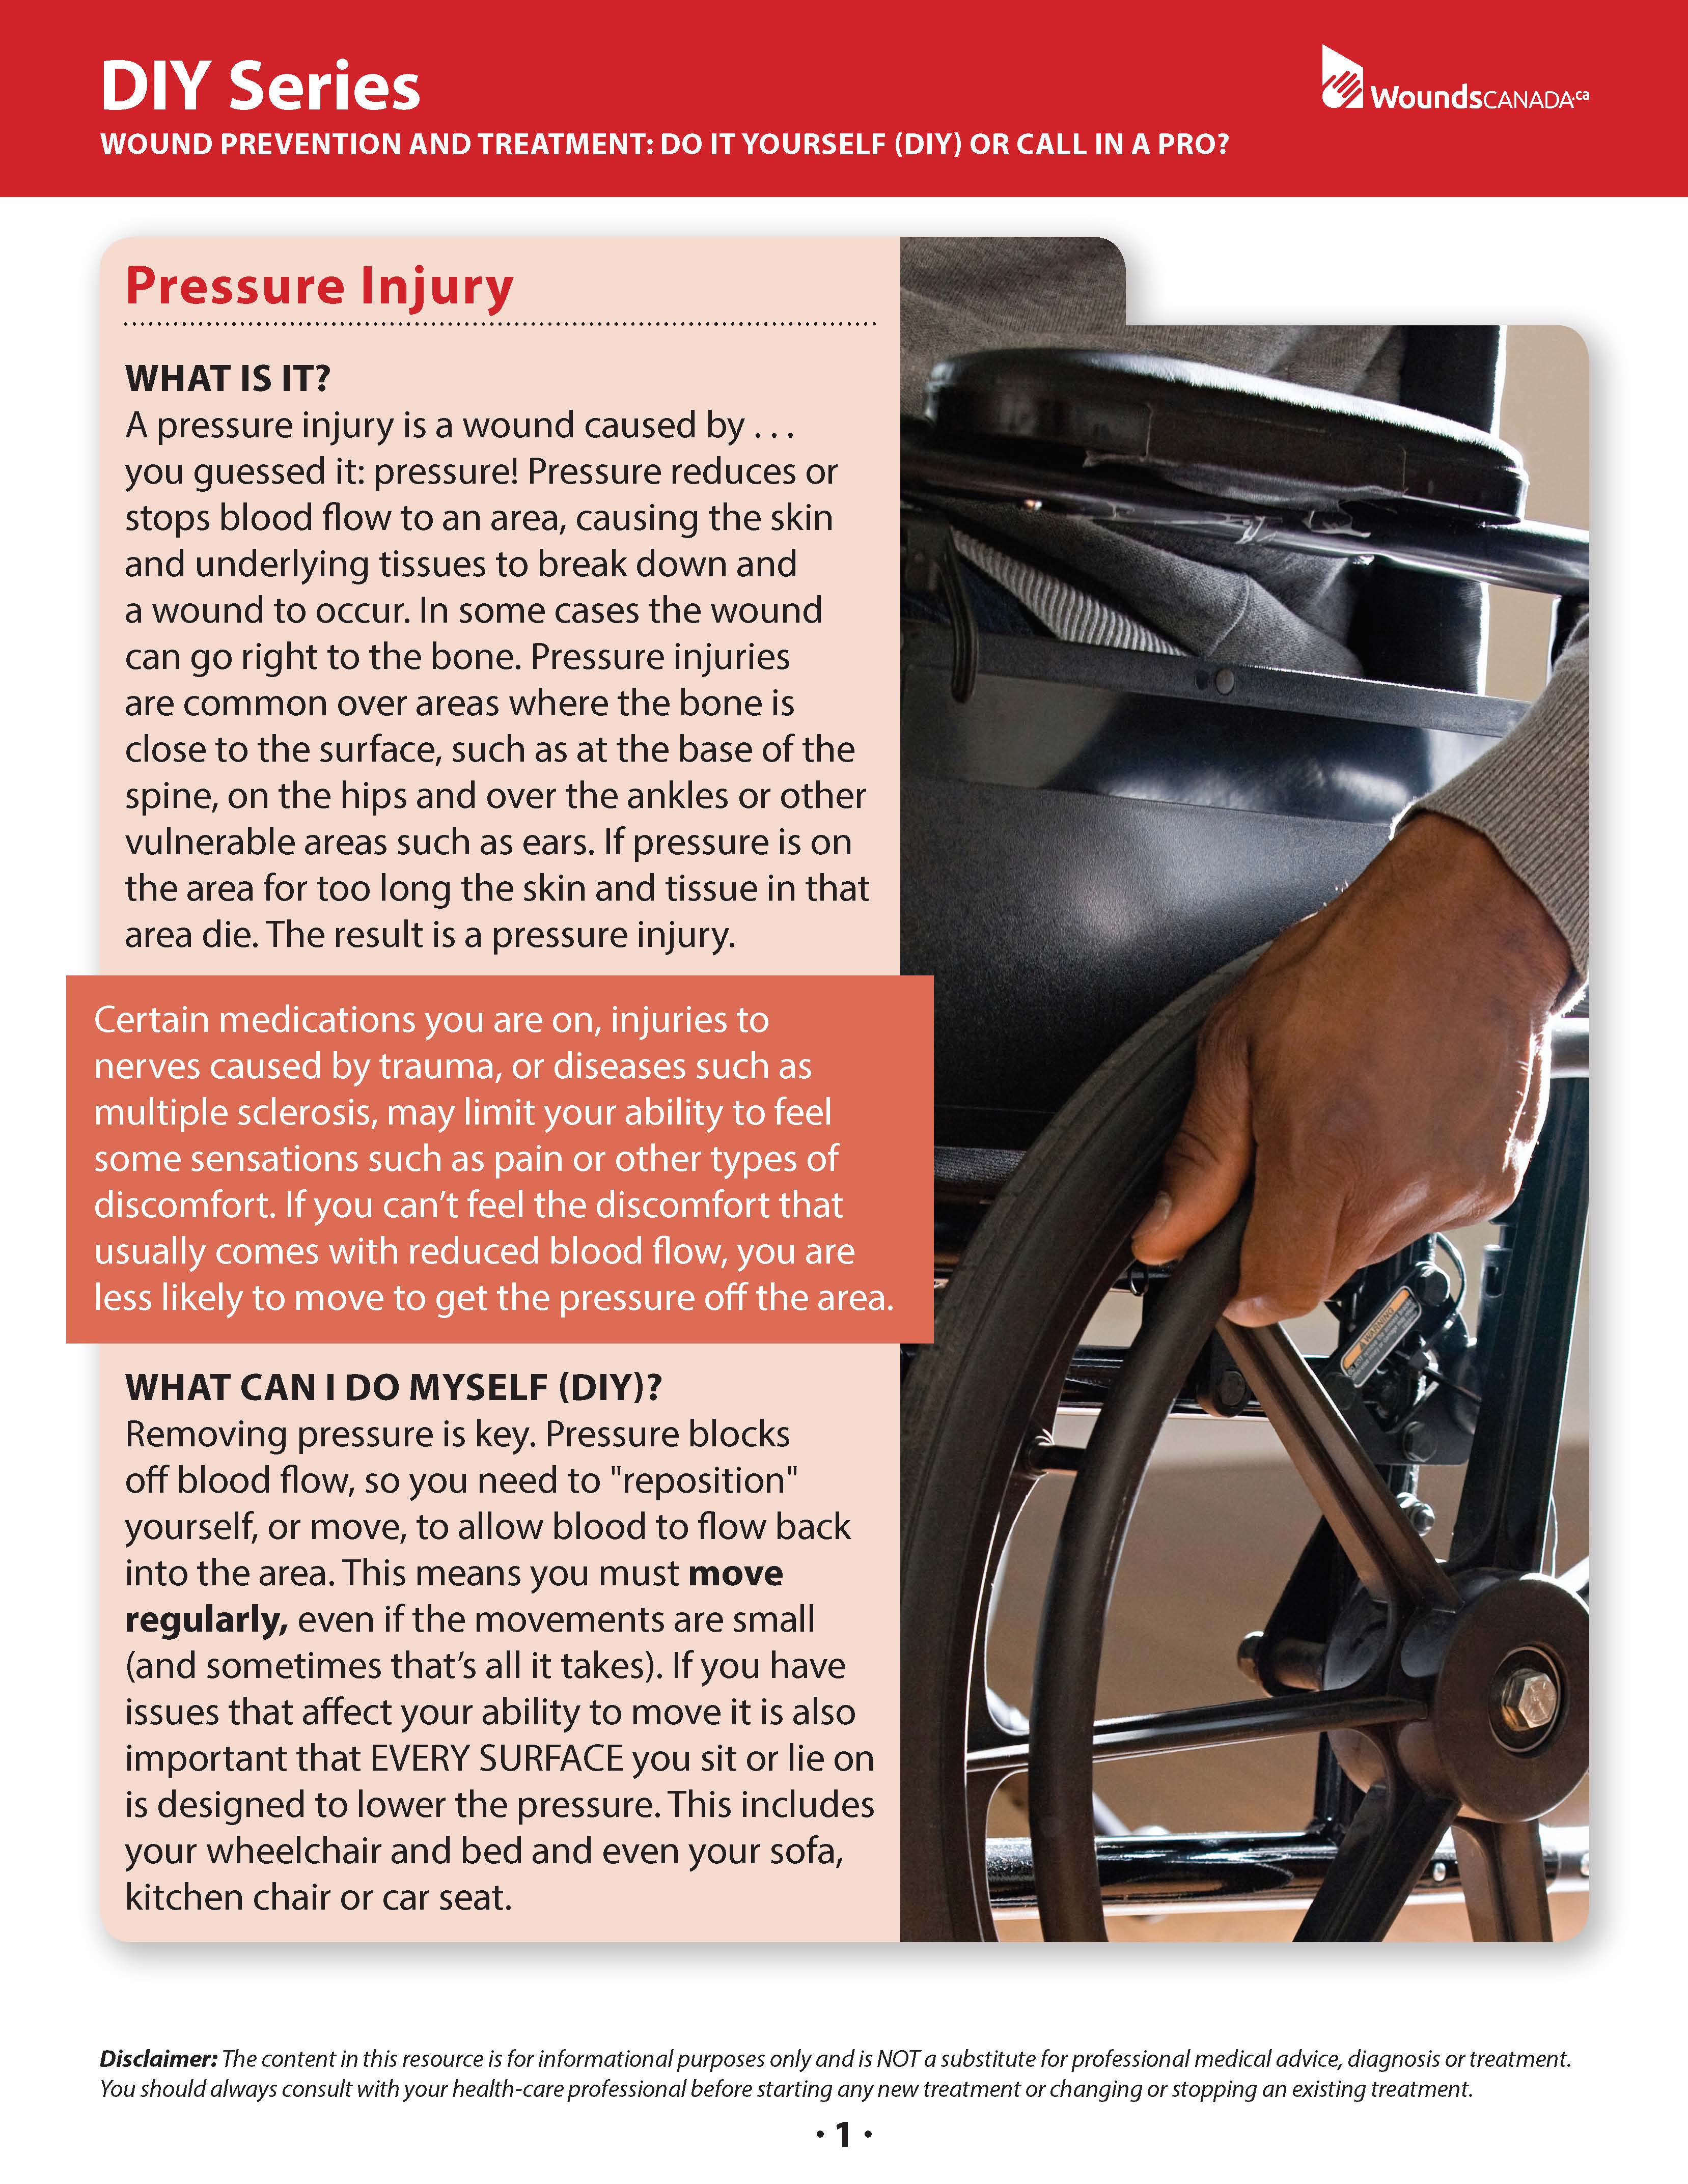 Pressure Injury (DIY Series)